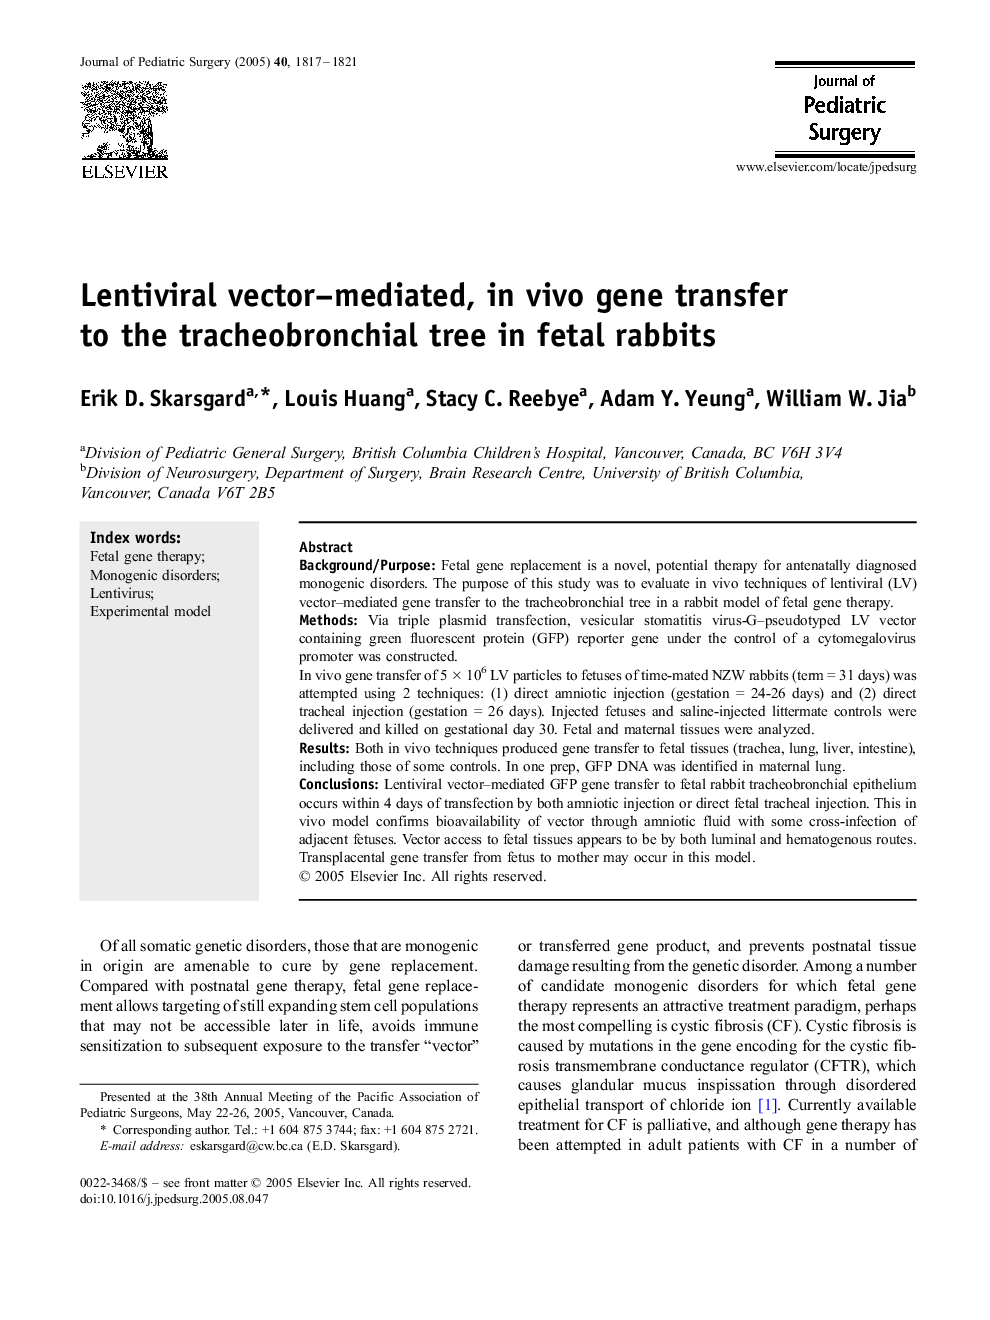 Lentiviral vector–mediated, in vivo gene transfer to the tracheobronchial tree in fetal rabbits 